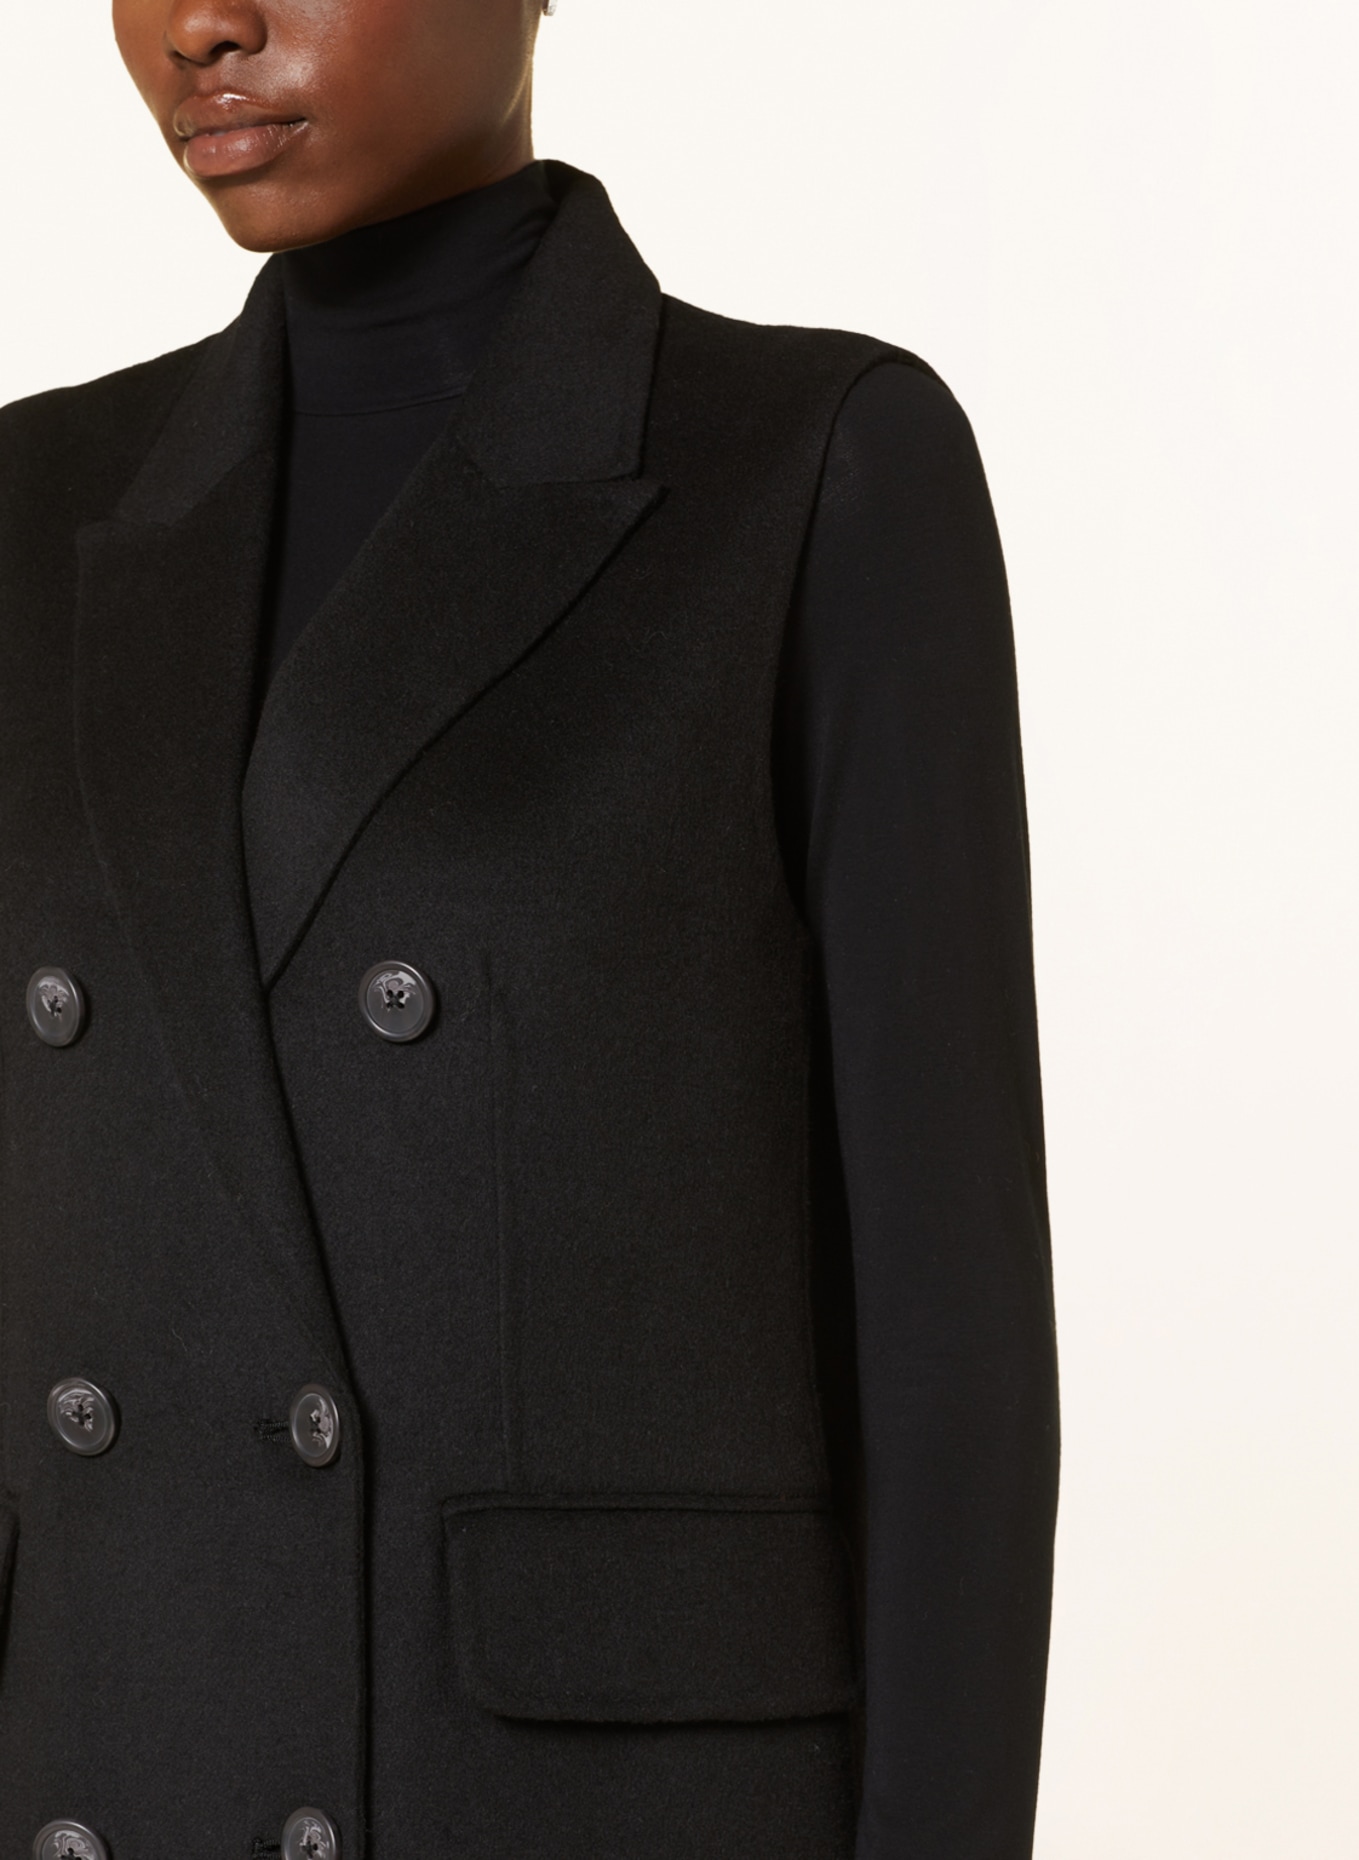 MRS & HUGS Blazer vest, Color: BLACK (Image 4)